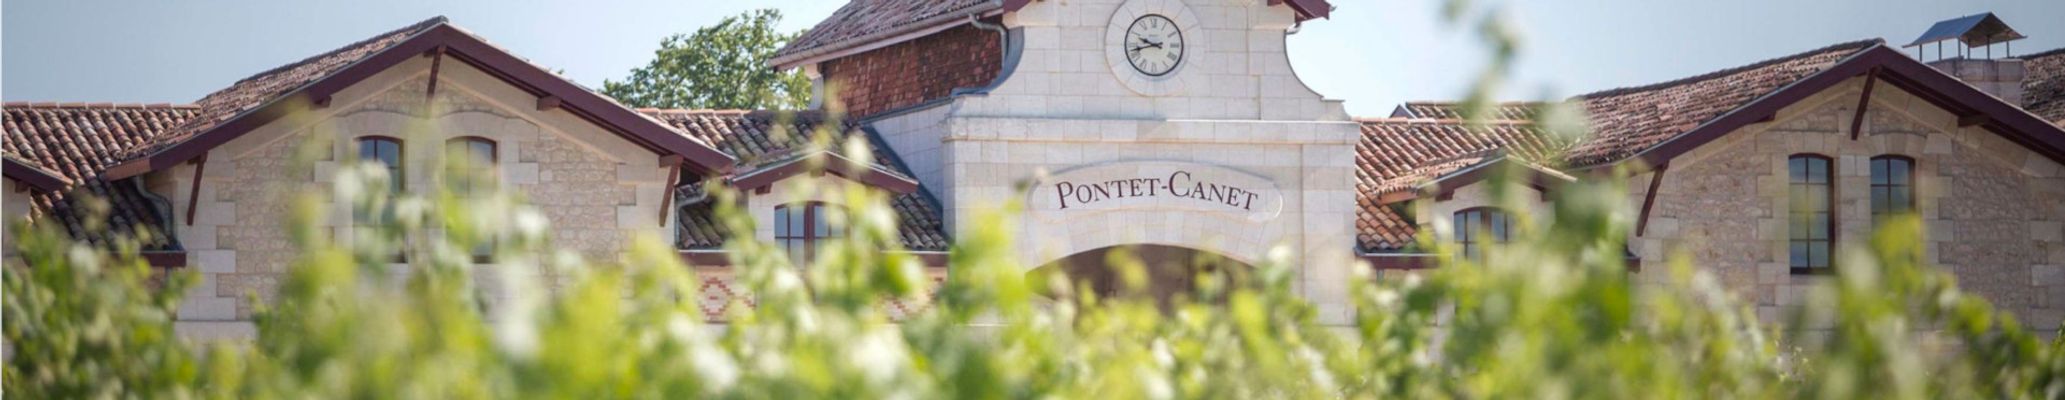 Château Pontet Canet 5ème Cru Classé Pauillac